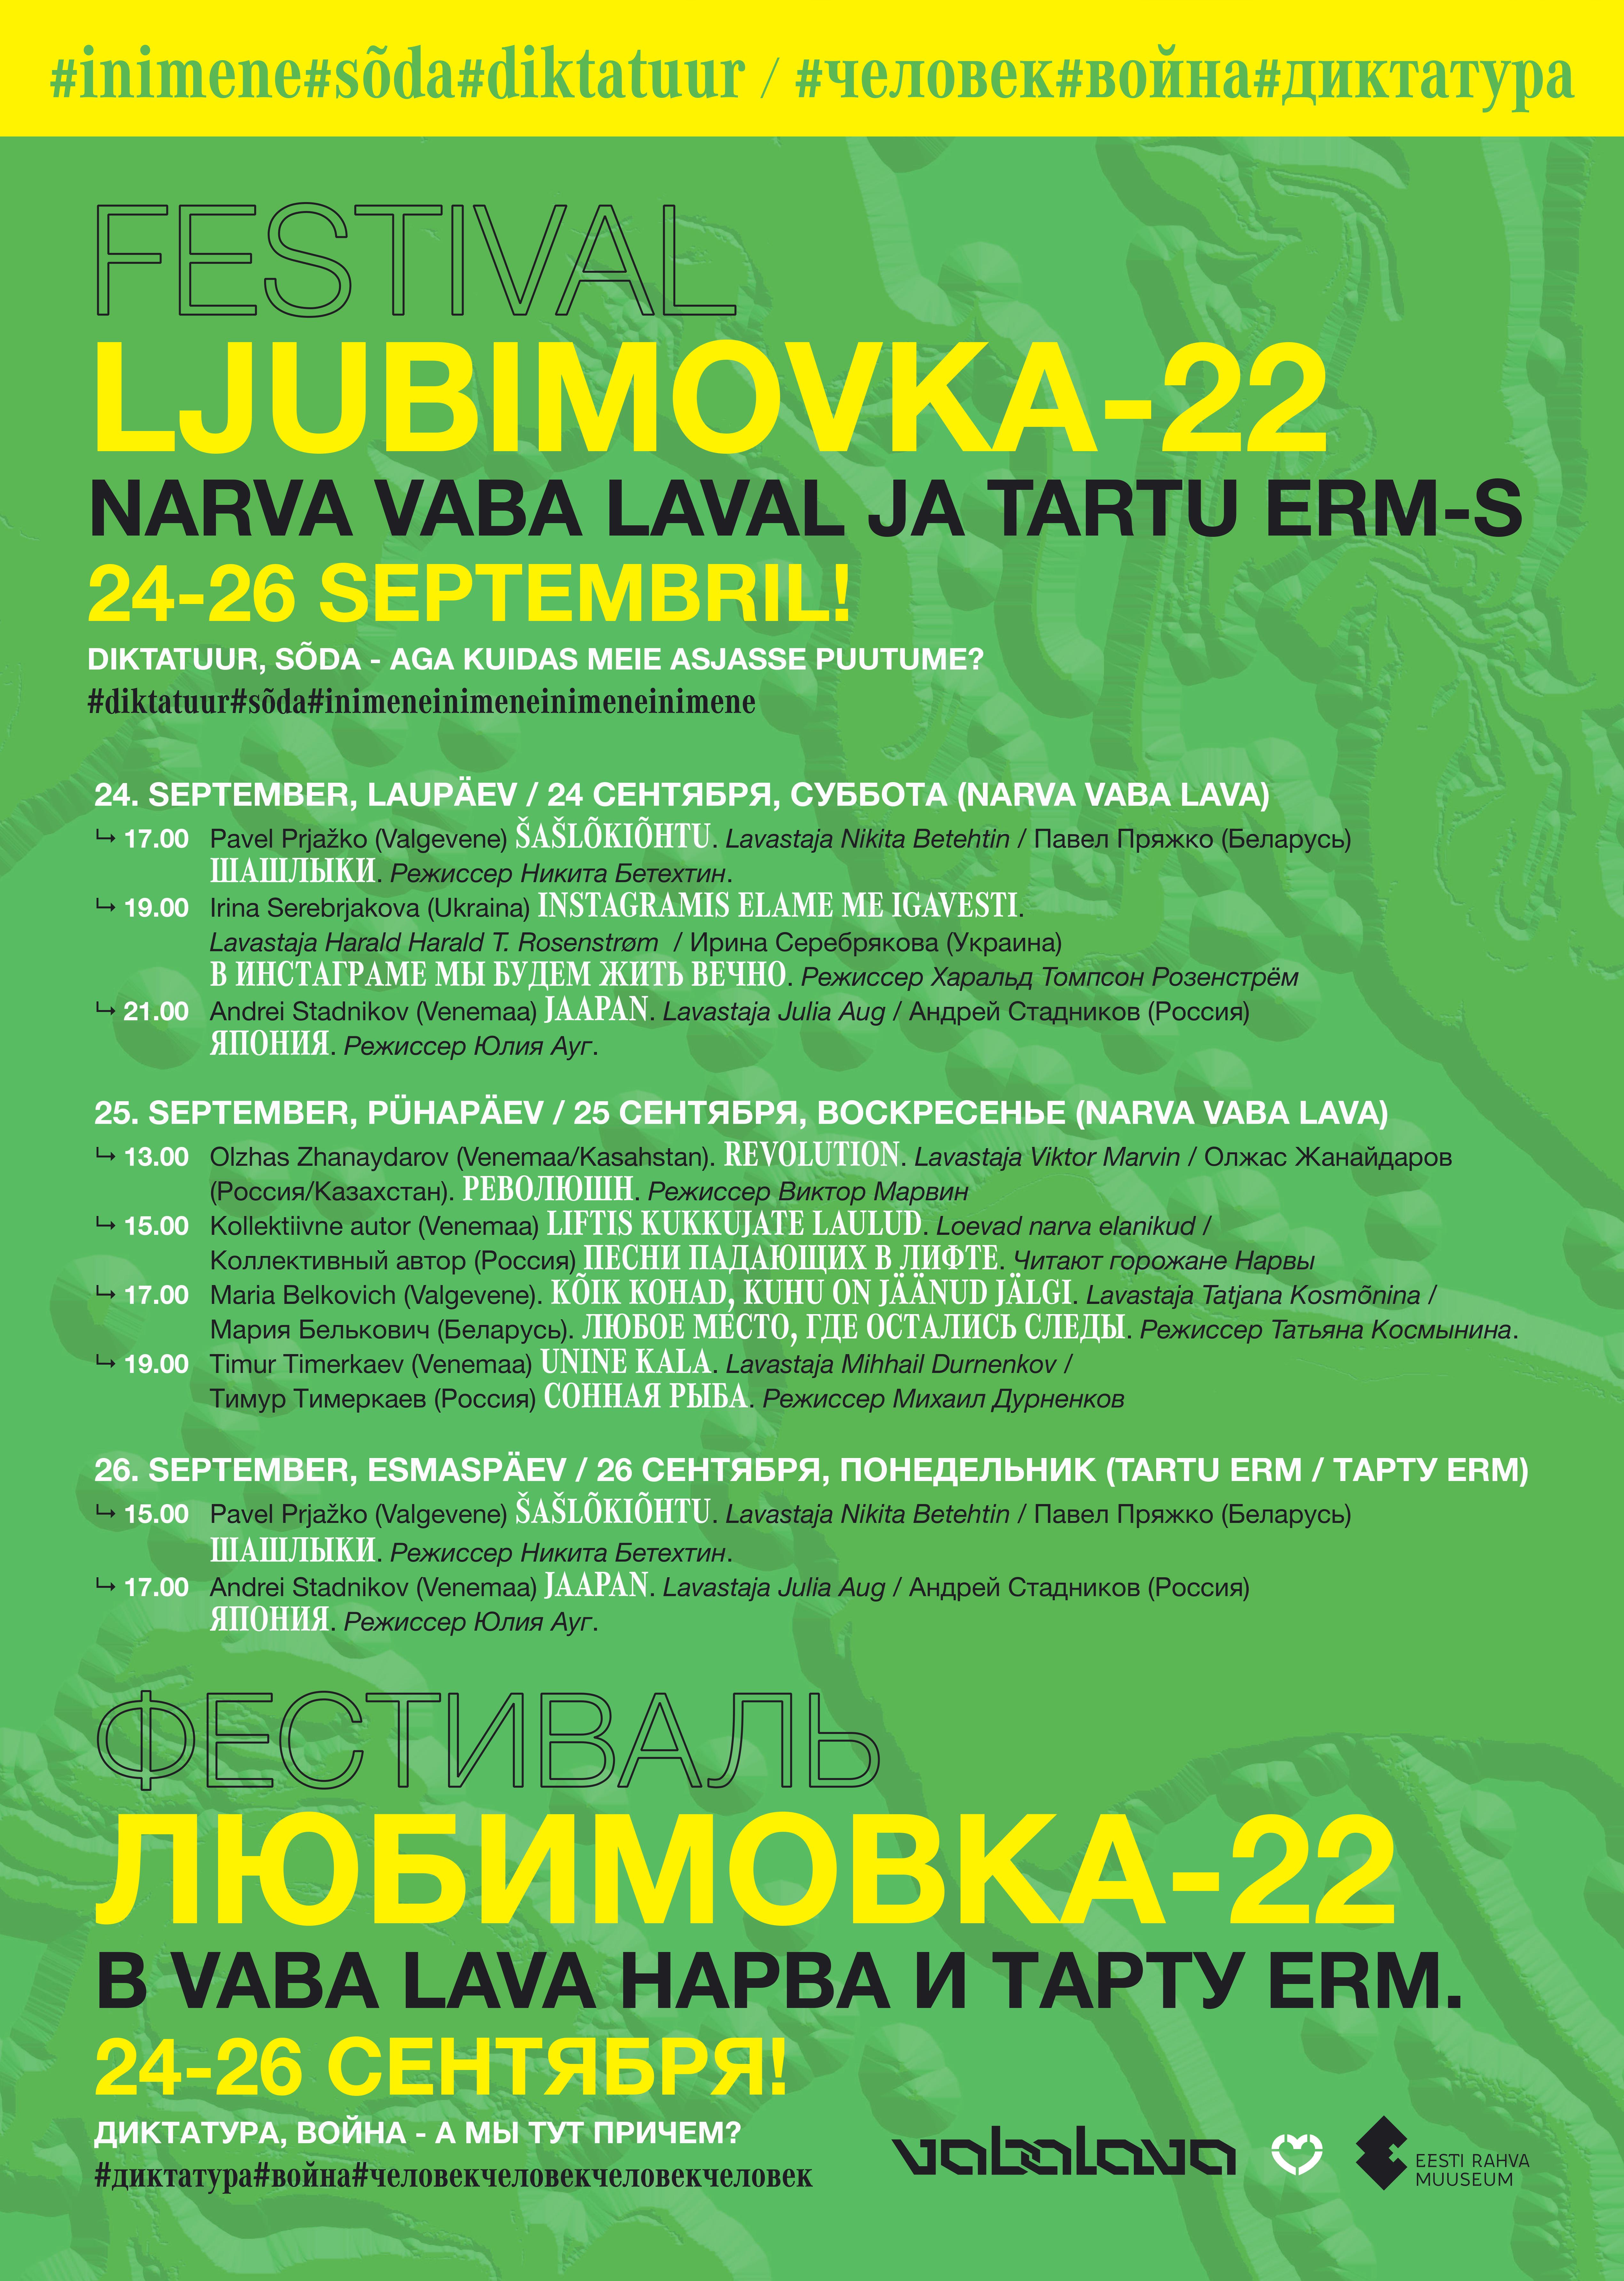 festival ljubimovka-22